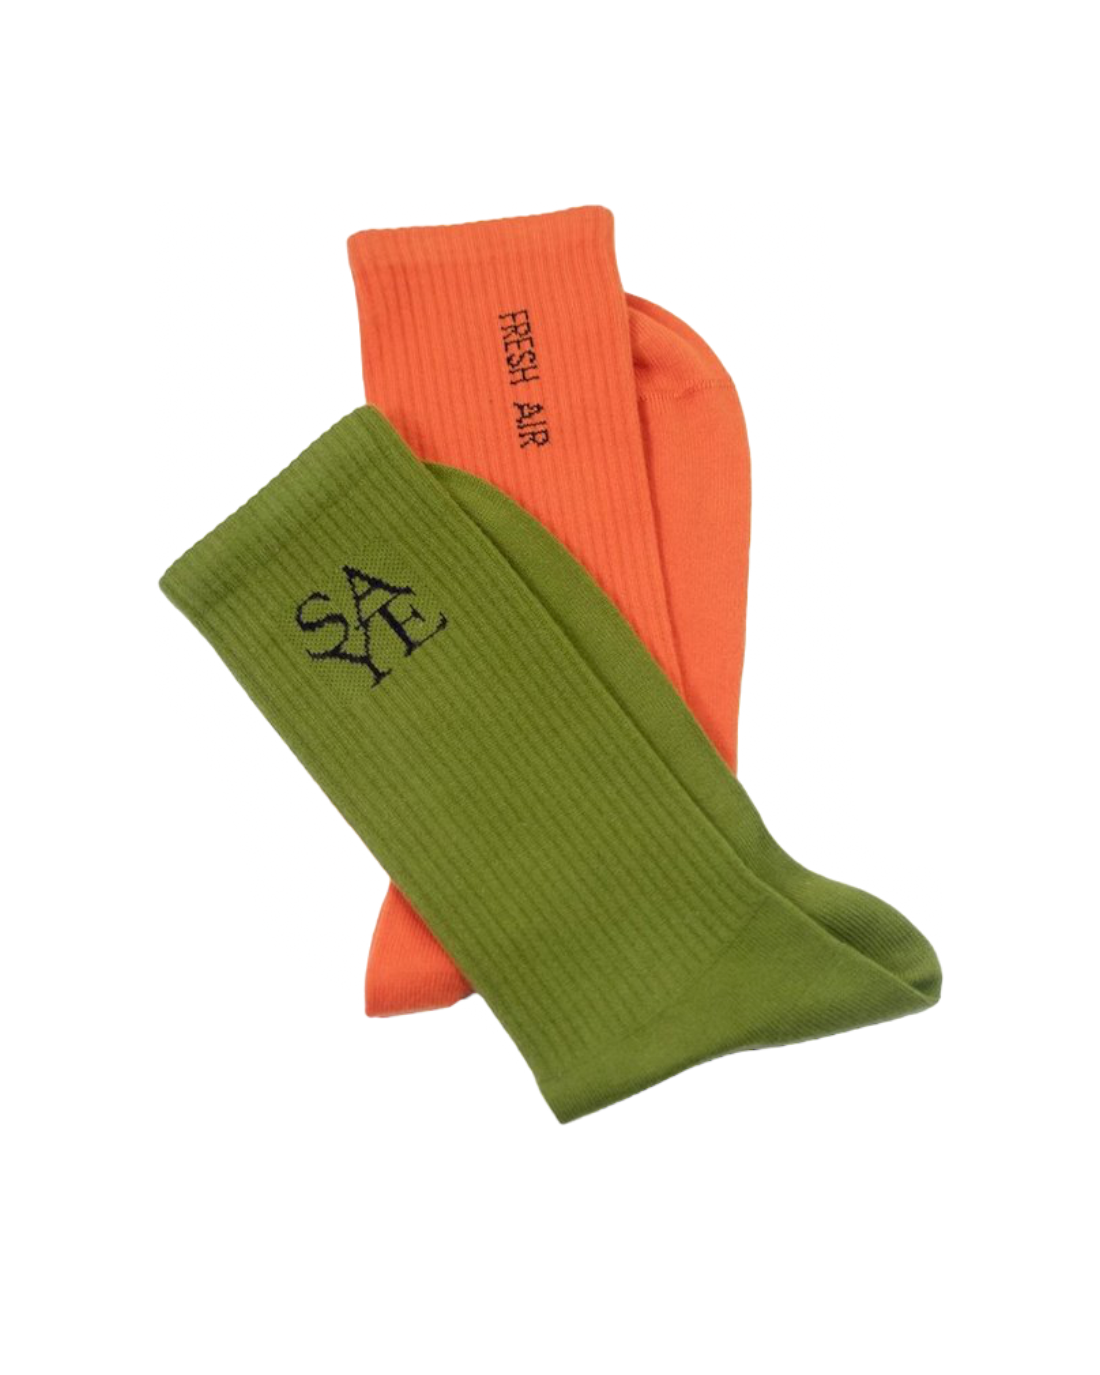 SAYE Socks In Green & Orange